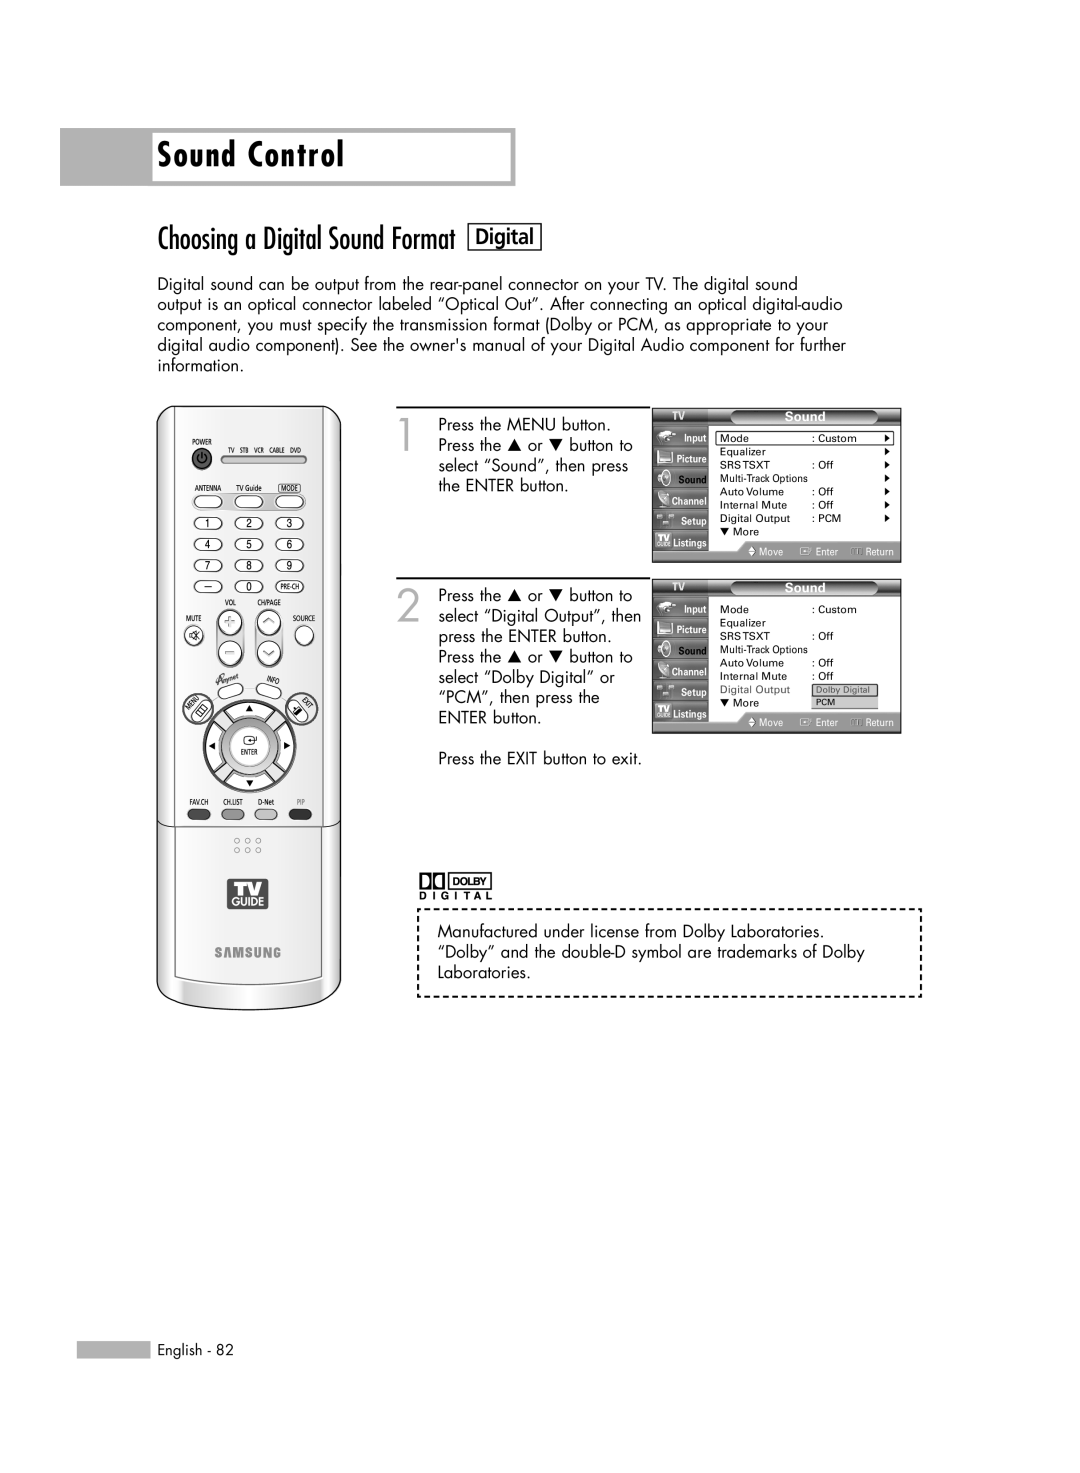 Samsung HL-R5688W manual Choosing a Digital Sound Format, Sound Control, Digital Output 